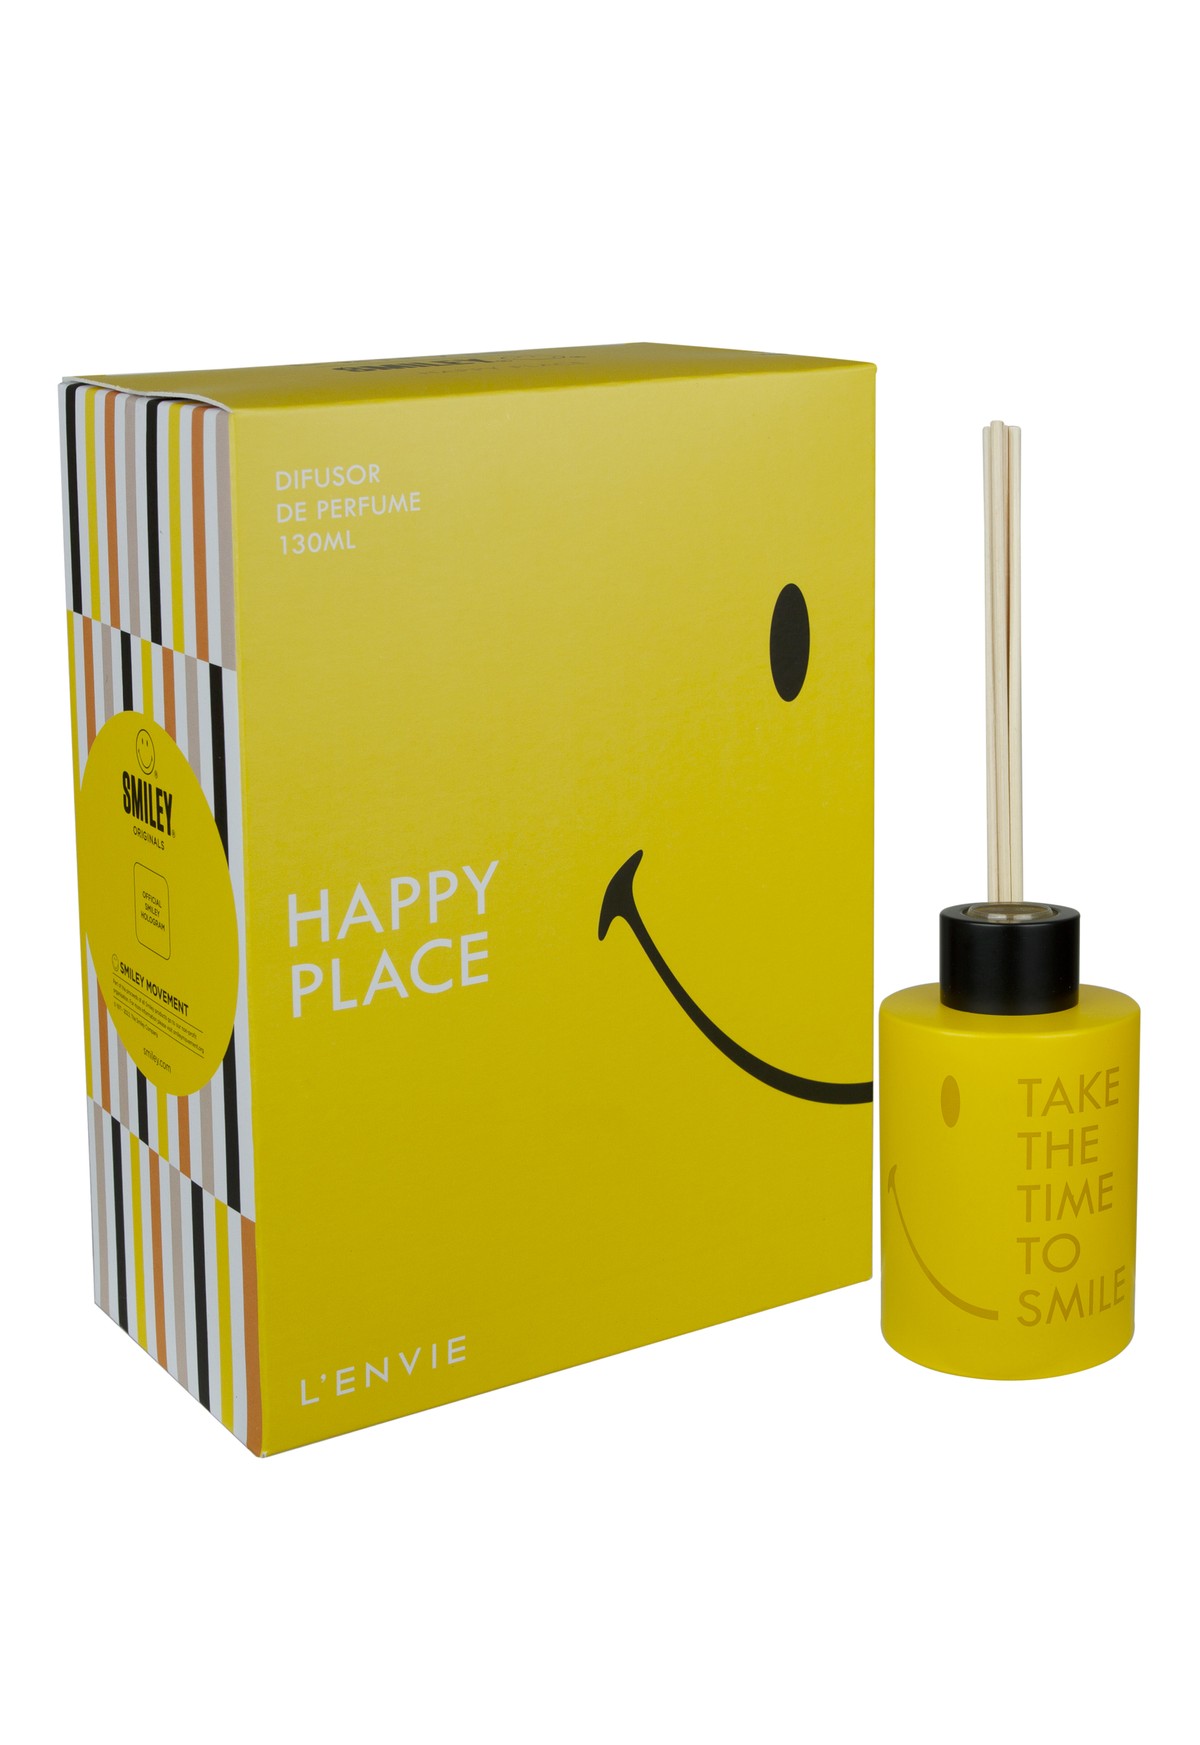 Difusor de Perfume | HAPPY PLACE - SMILEY ®️